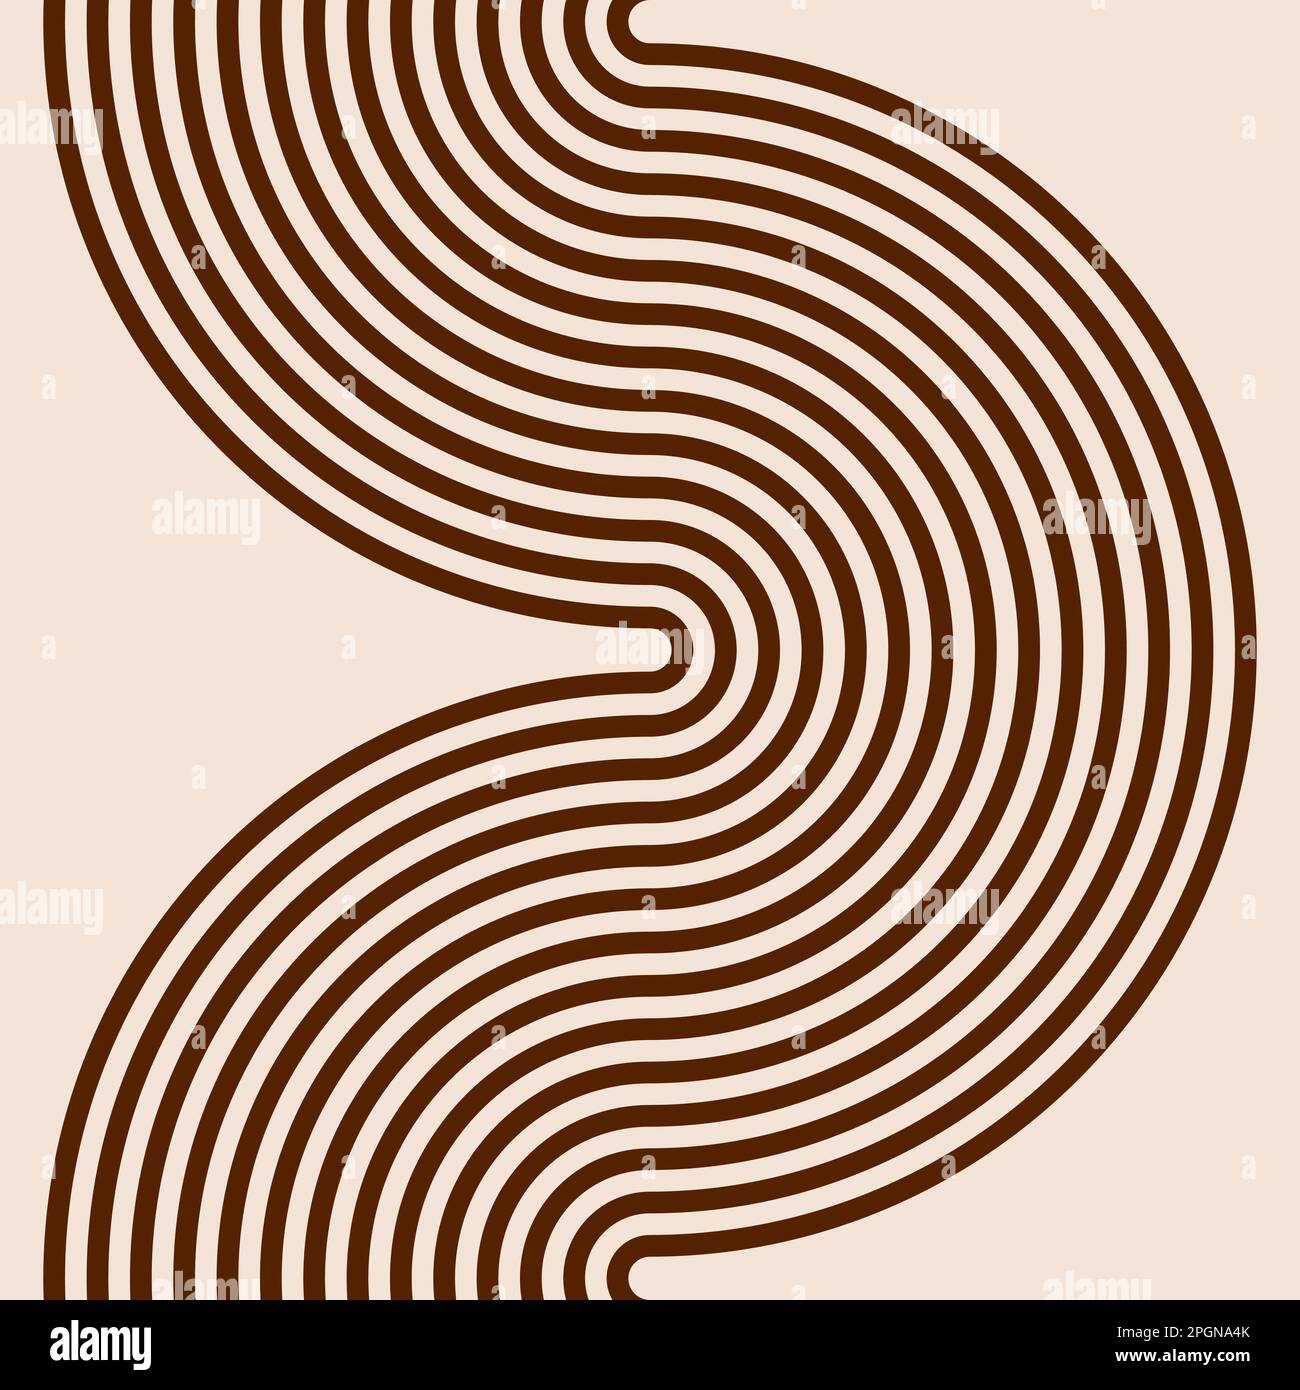 Grafica vettoriale marrone e beige di semicerchi concentrici equidistanziati che si uniscono per formare un serpente continuo Illustrazione Vettoriale